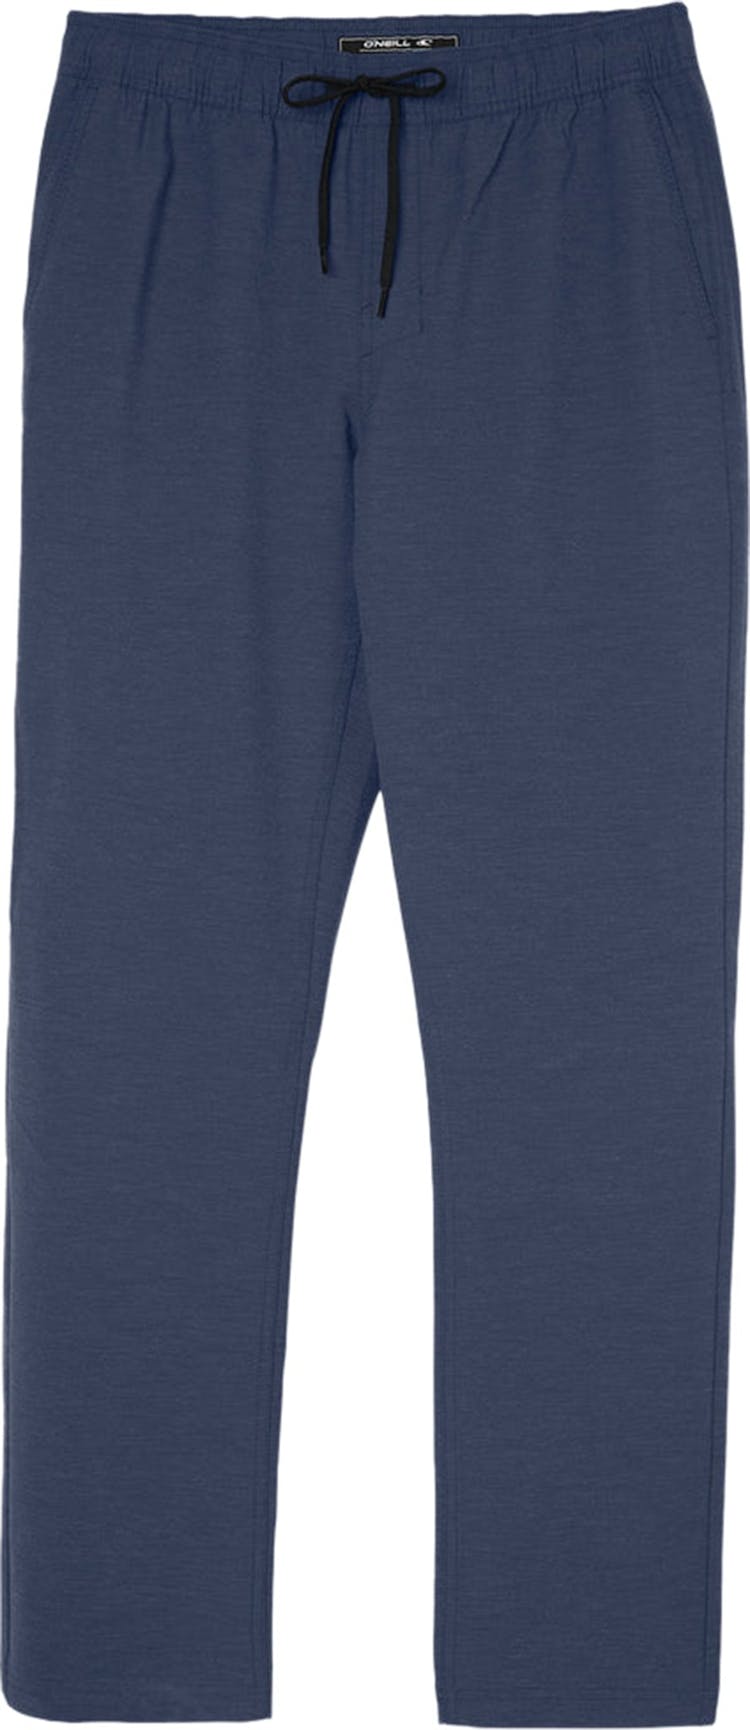 Numéro de l'image de la galerie de produits 1 pour le produit Pantalon hybride Venture E-Waist - Homme